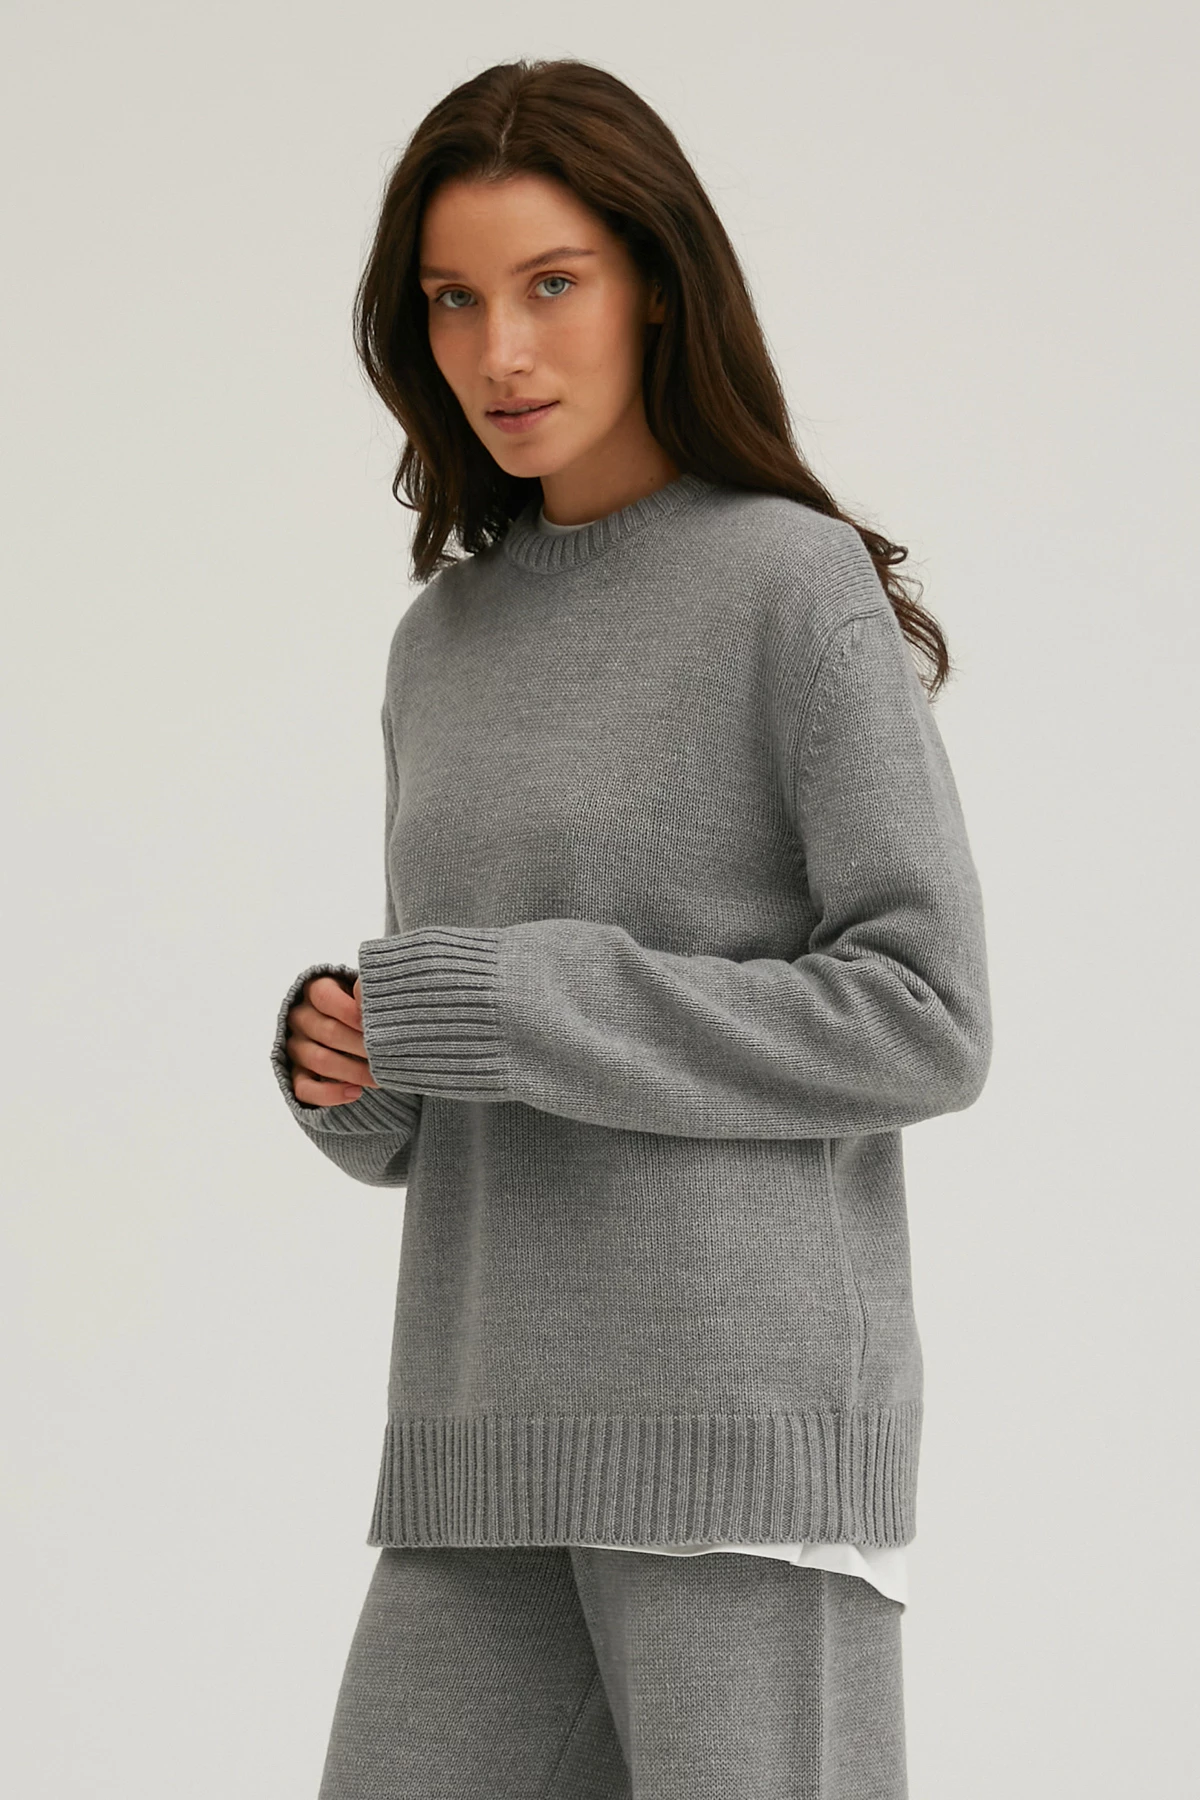 В’язаний светр з вовни мериноса сірого кольору, фото 1